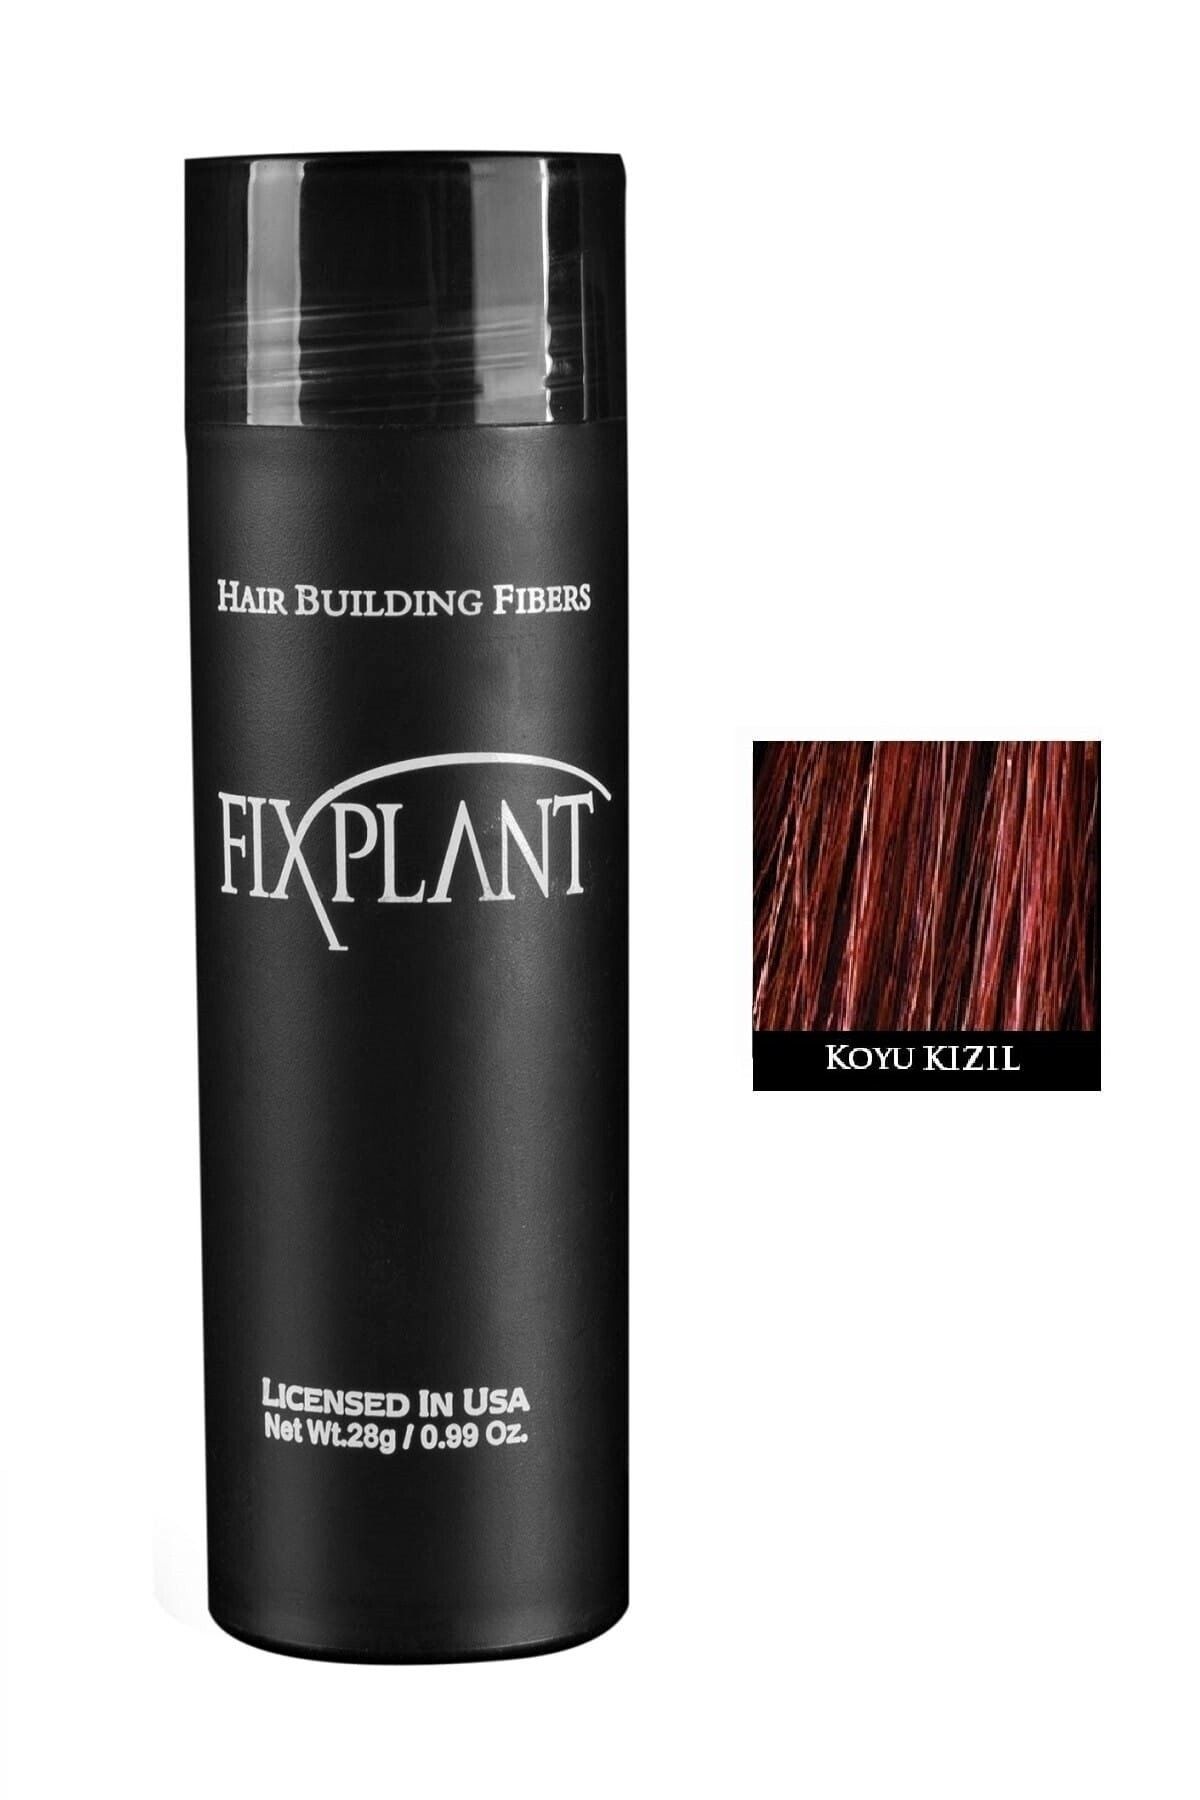 FIXPLANT Saç Dolgunlaştırıcı 28 Gr. Koyu Kızıl